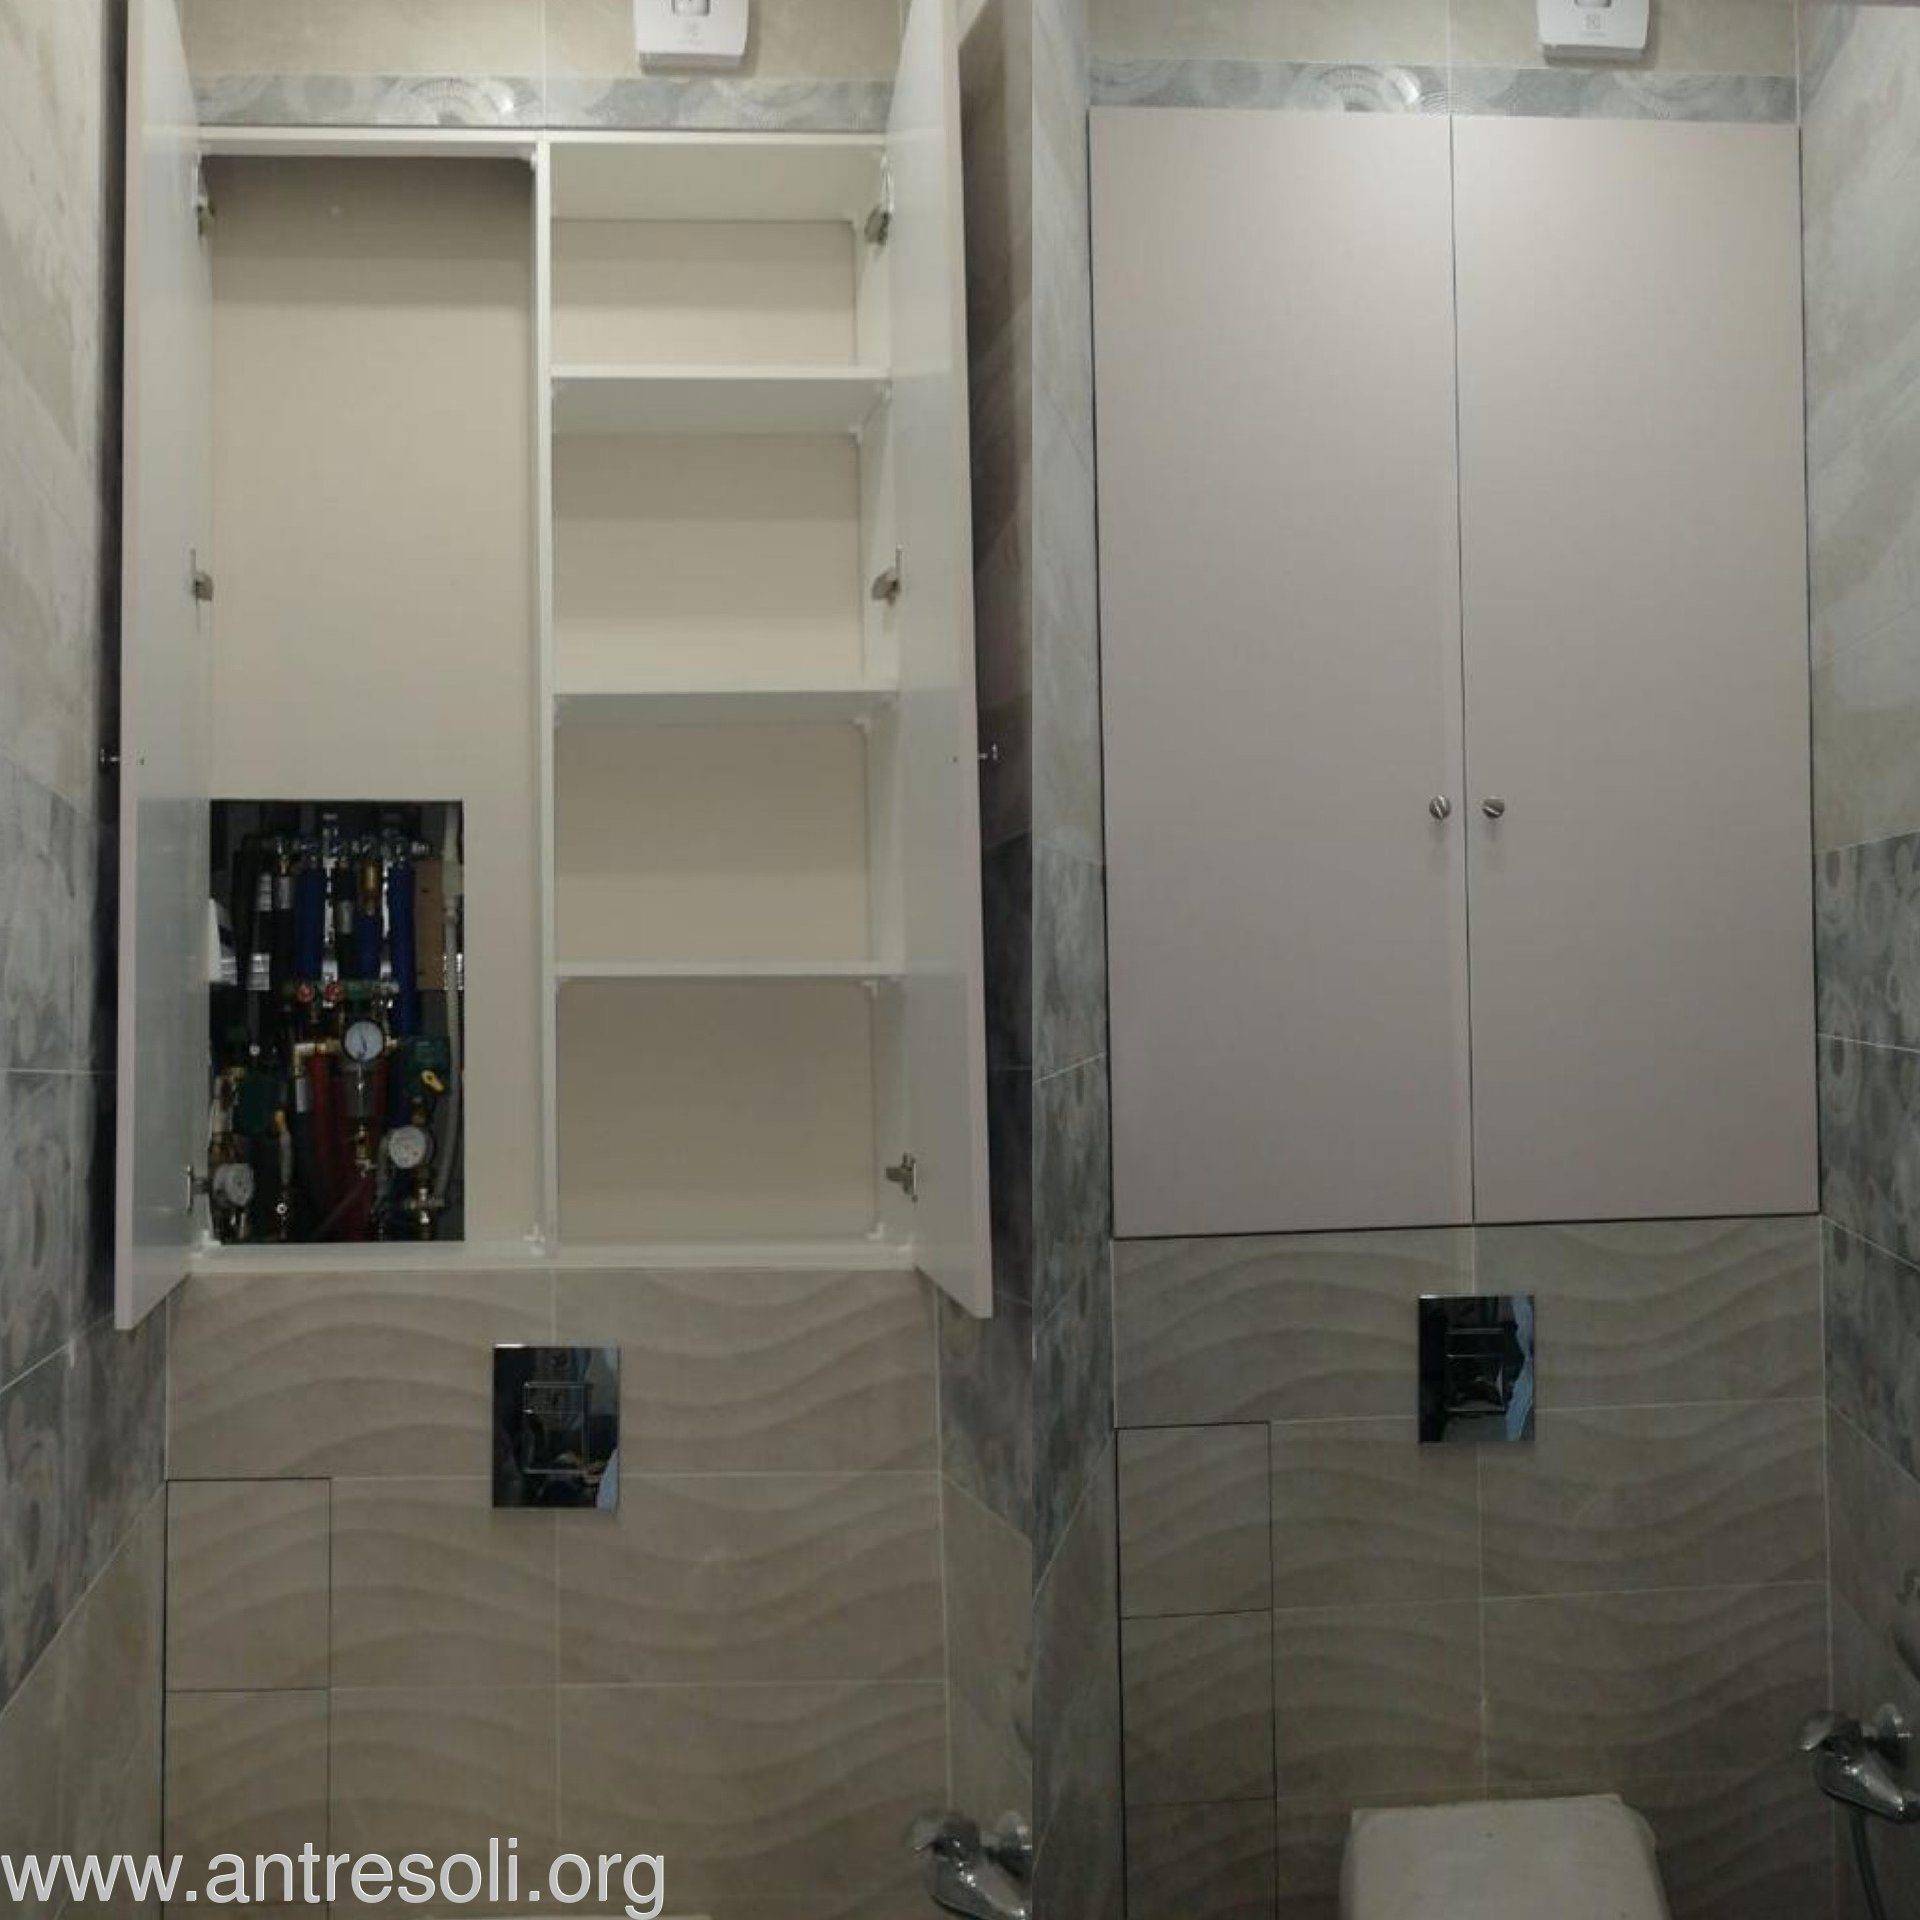 Идеи для создания шкафа в туалете за унитазом своими руками (20 фото)